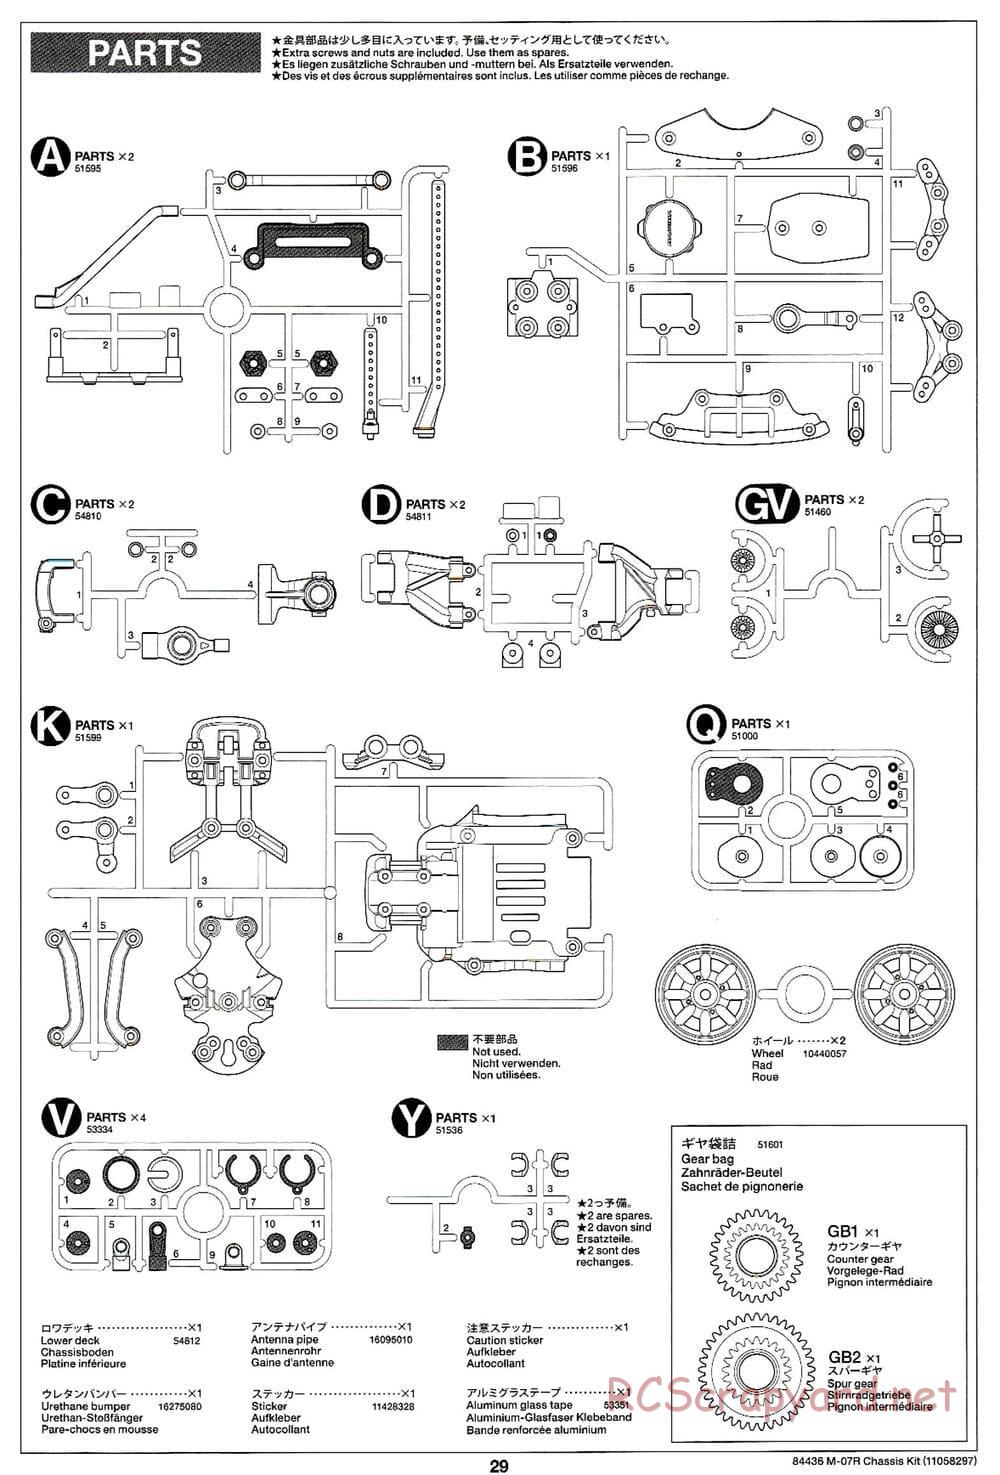 Tamiya - M-07R Chassis - Manual - Page 29